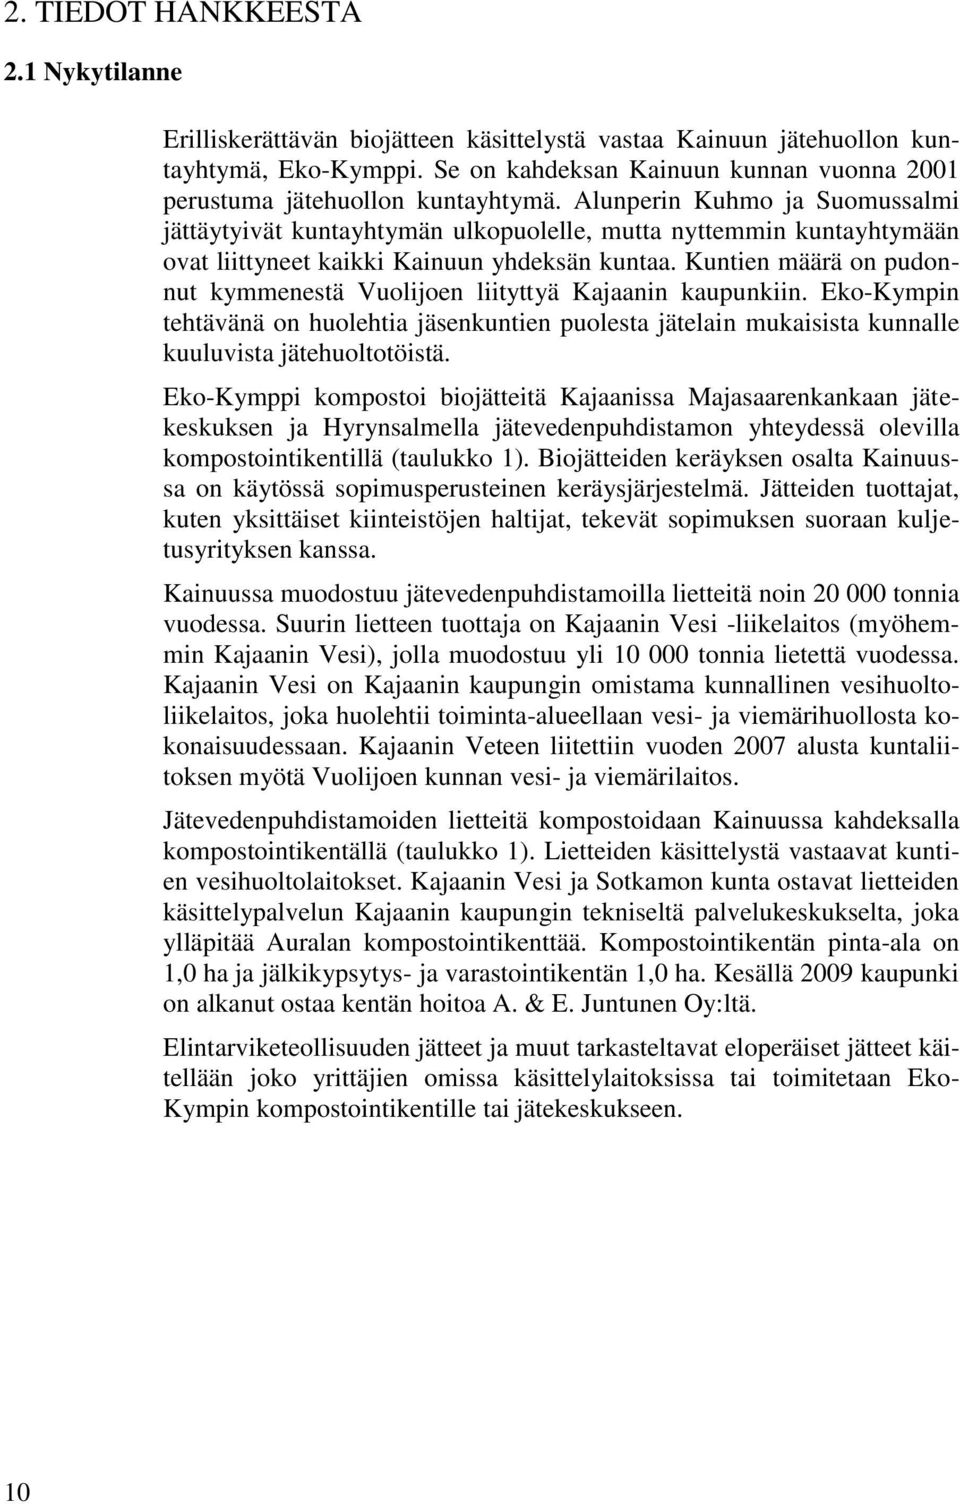 Alunperin Kuhmo ja Suomussalmi jättäytyivät kuntayhtymän ulkopuolelle, mutta nyttemmin kuntayhtymään ovat liittyneet kaikki Kainuun yhdeksän kuntaa.